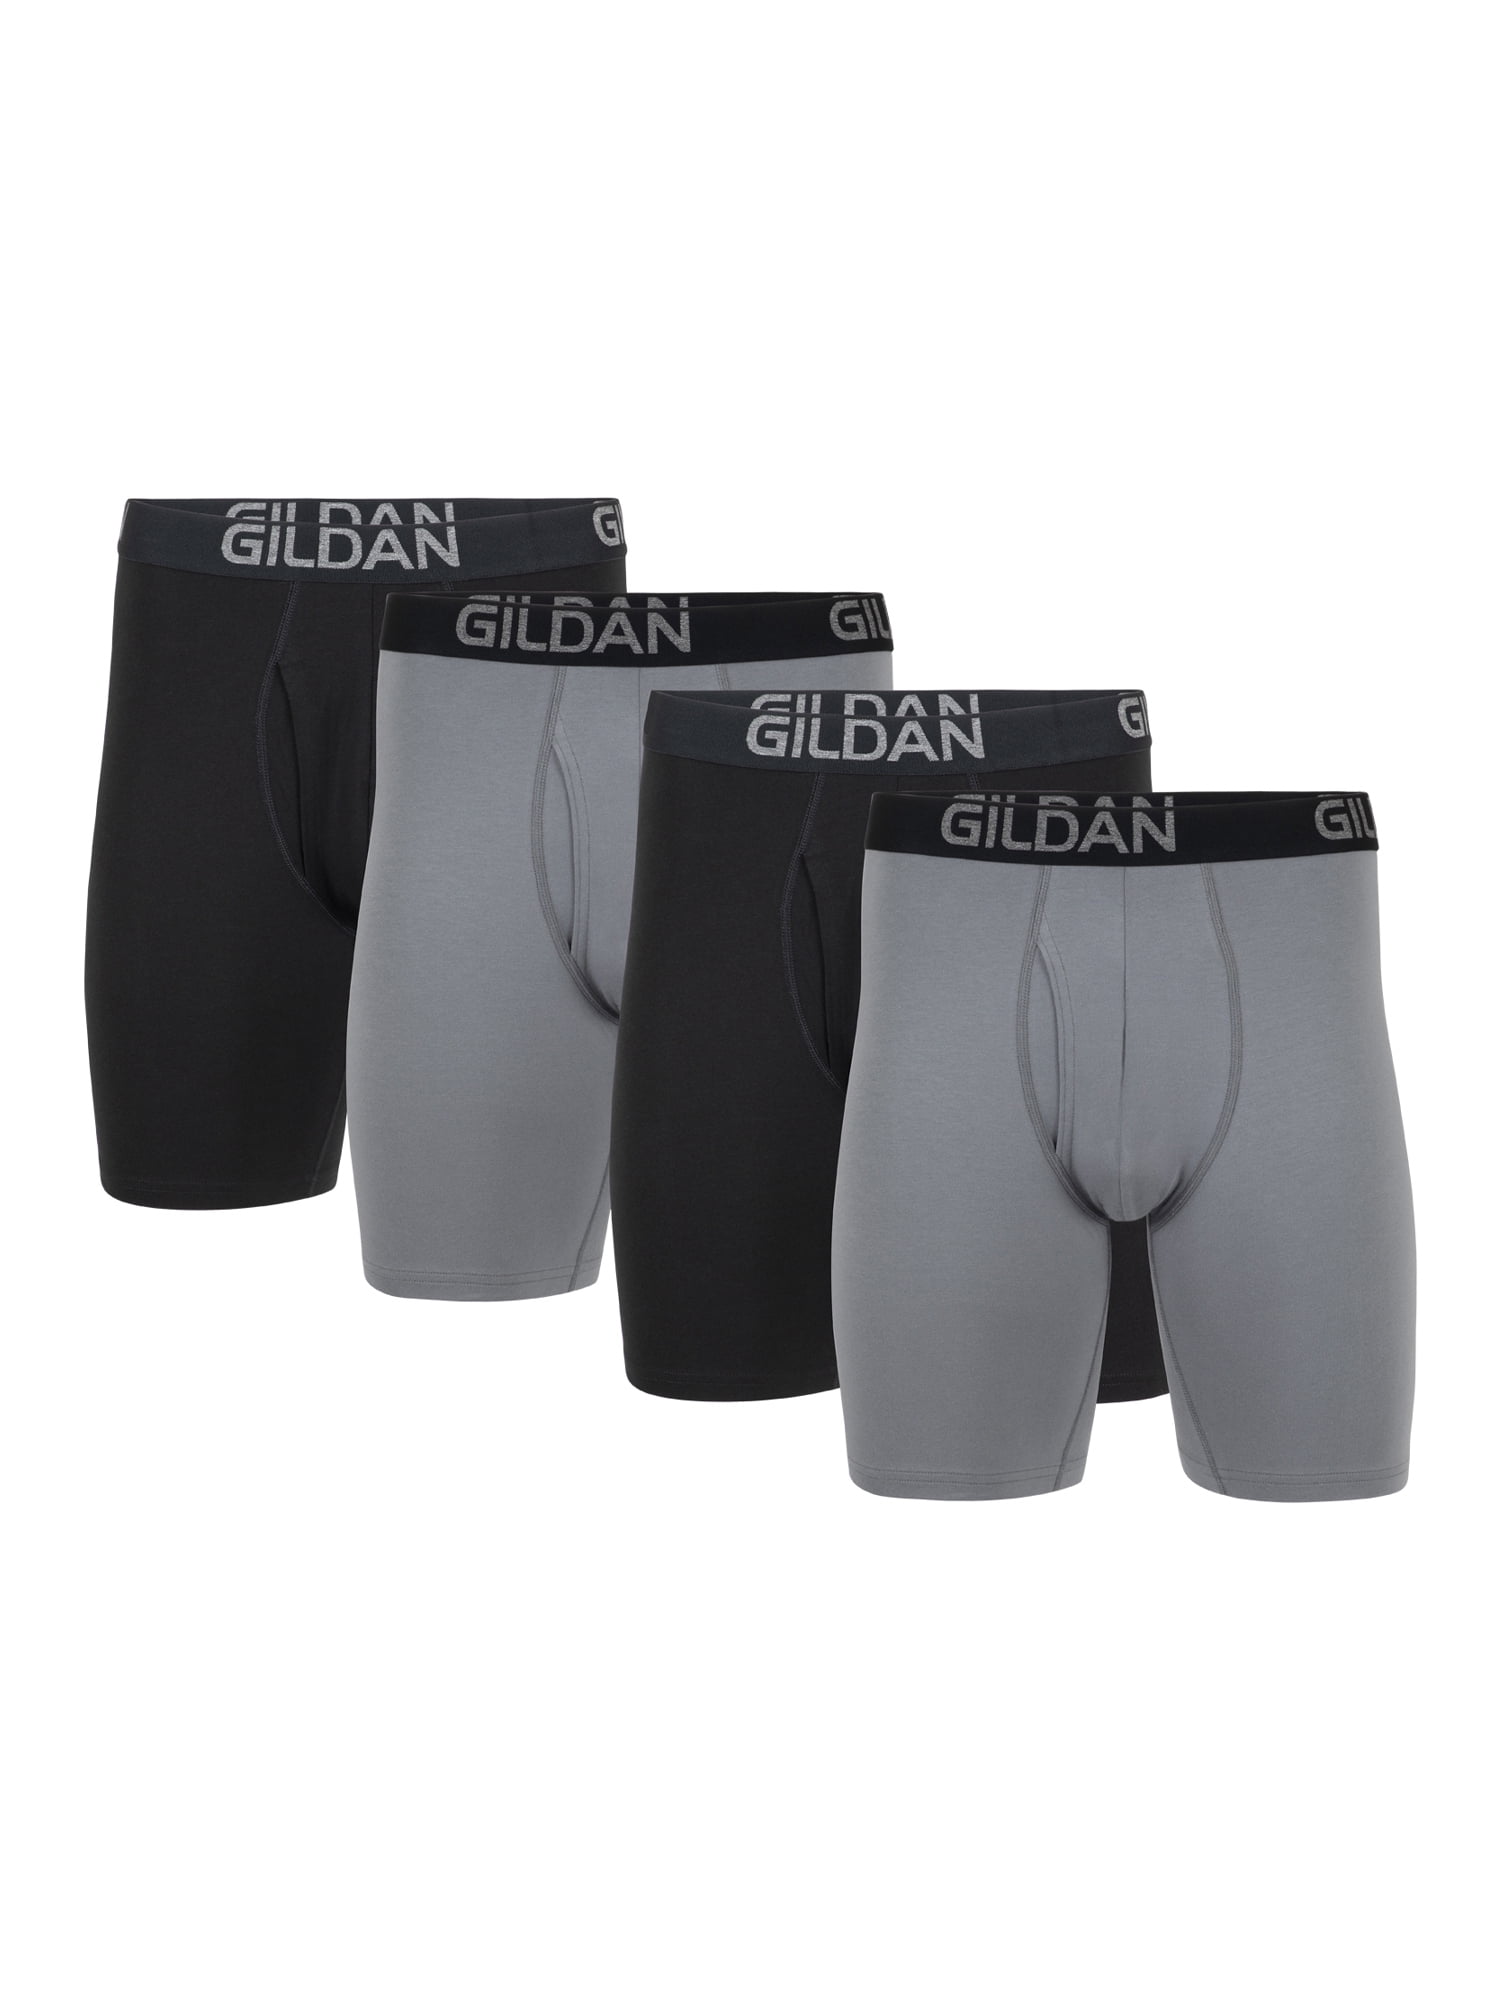 Gildan Men's Cotton Stretch Long Leg Boxer Briefs, 4-Pack, 8.5 Inseam,  Sizes S-2XL 